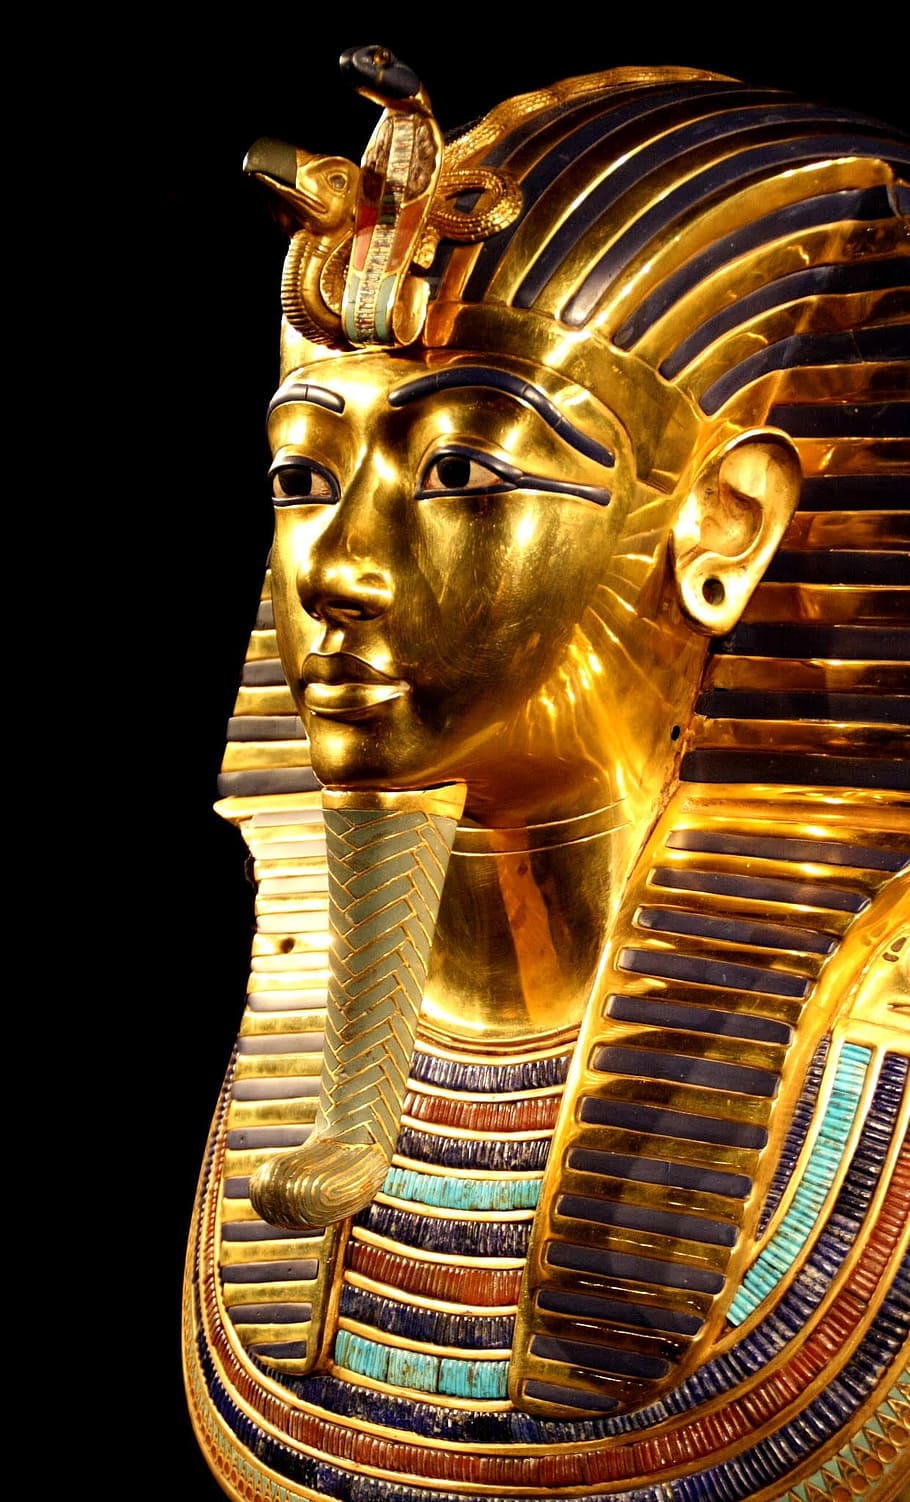 nefertiti 동상, 투탕카멘, 데스 마스크, 파라오의, 이집트, 조각, 동상, 예술과 공예, 금색의, 표현